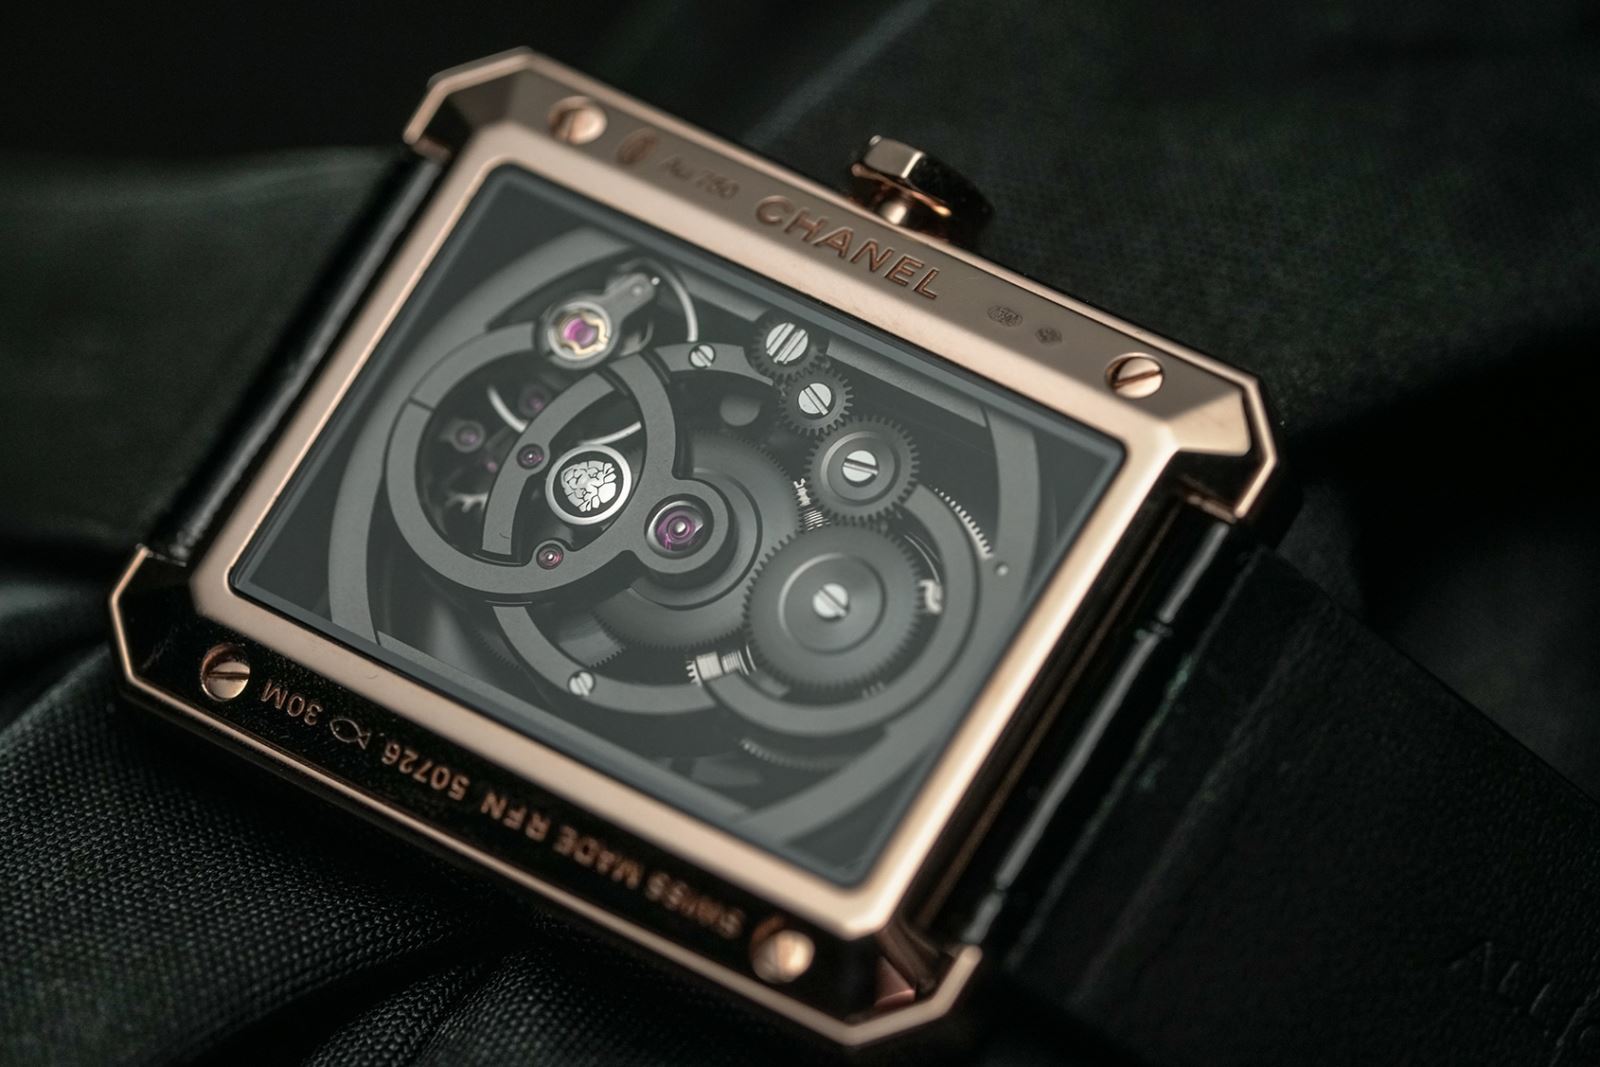 Calibre 3 và đồng hồ Chanel BOY·FRIEND Skeleton được giới thiệu năm 2018